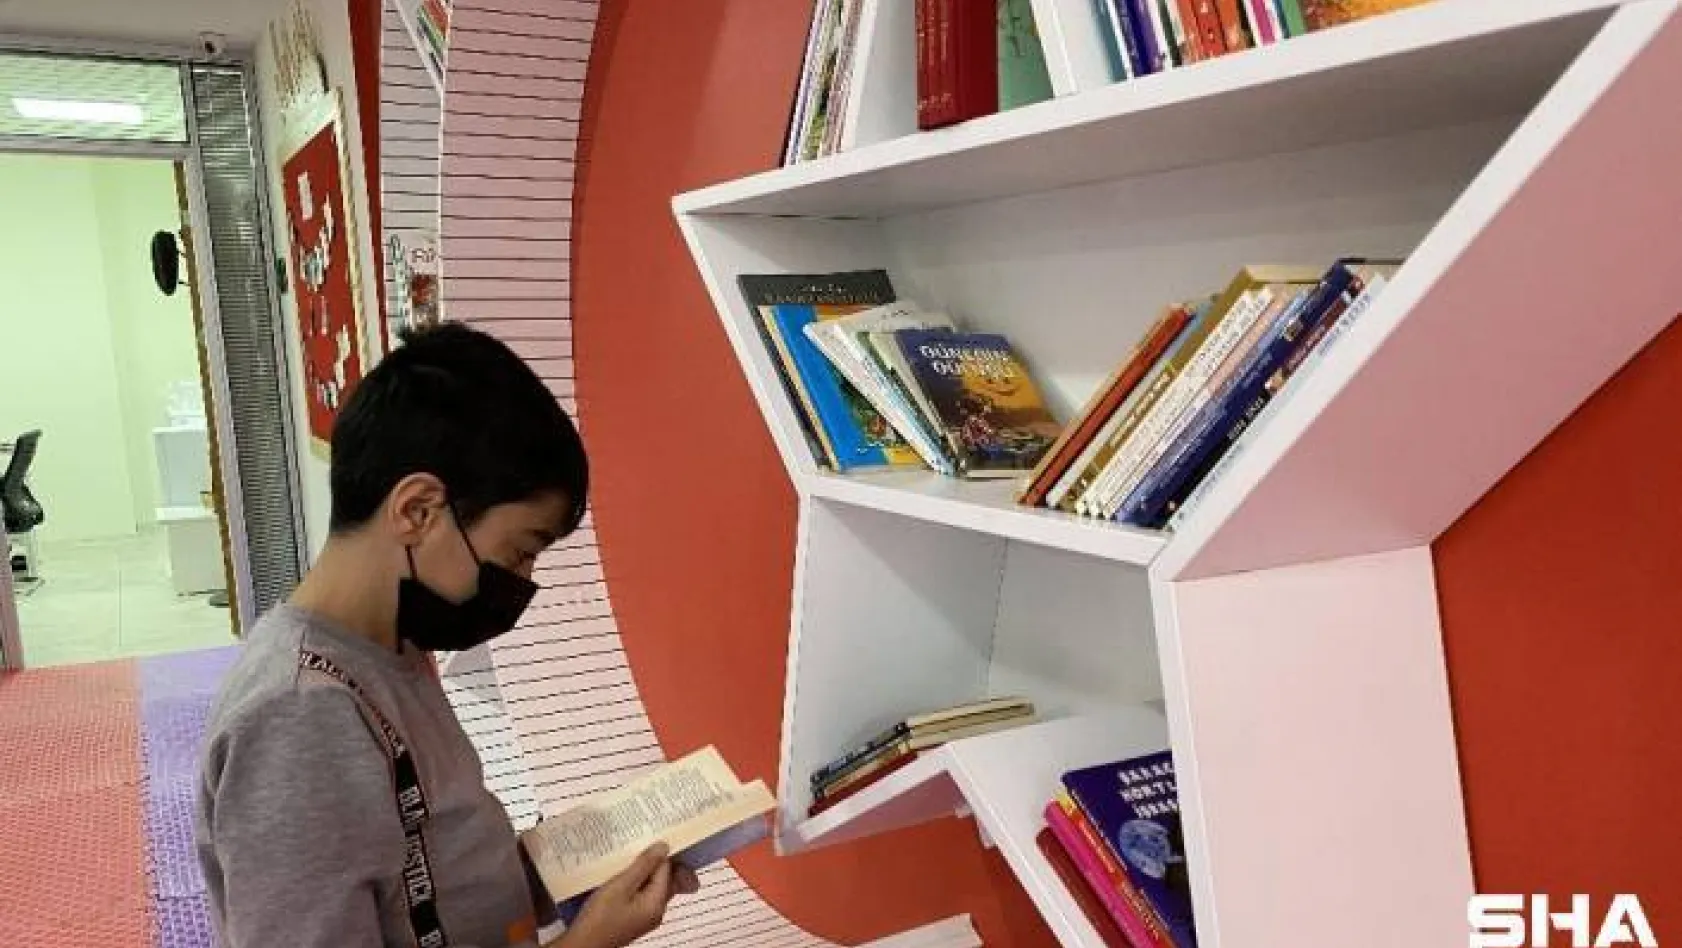 Sultangazi'de çocuk kütüphanesi hizmete açıldı